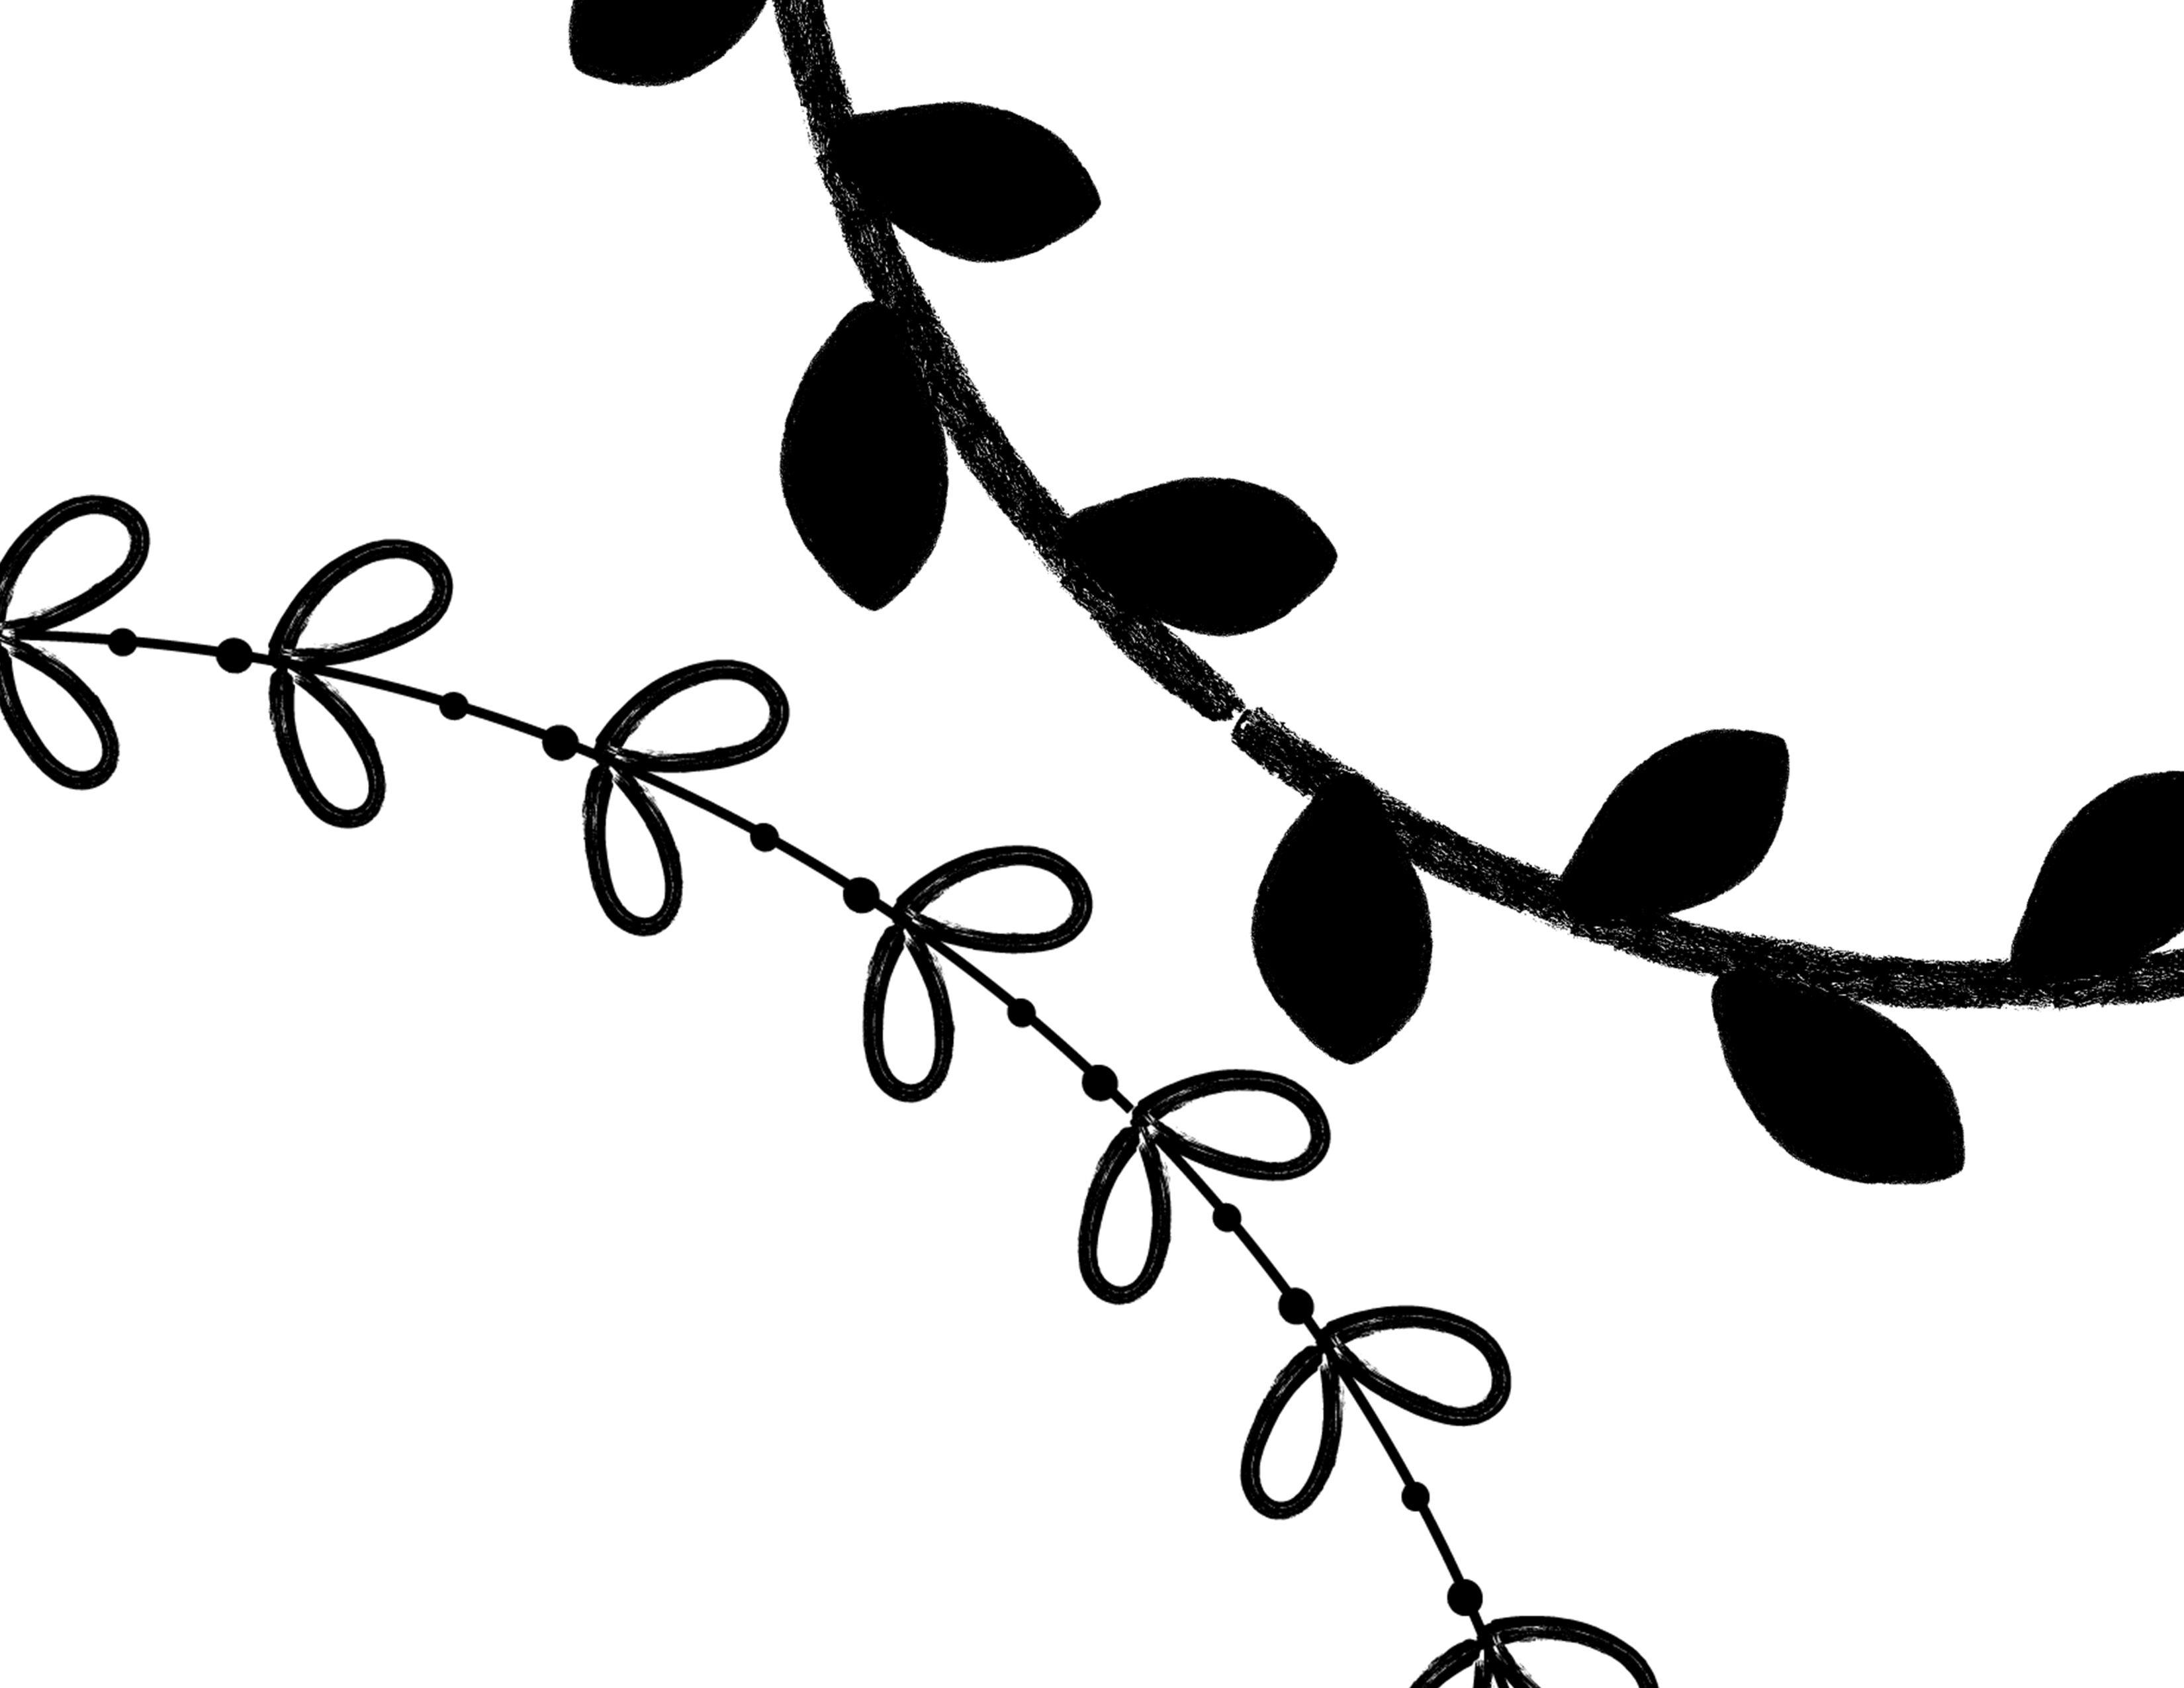 leaf vine clip art